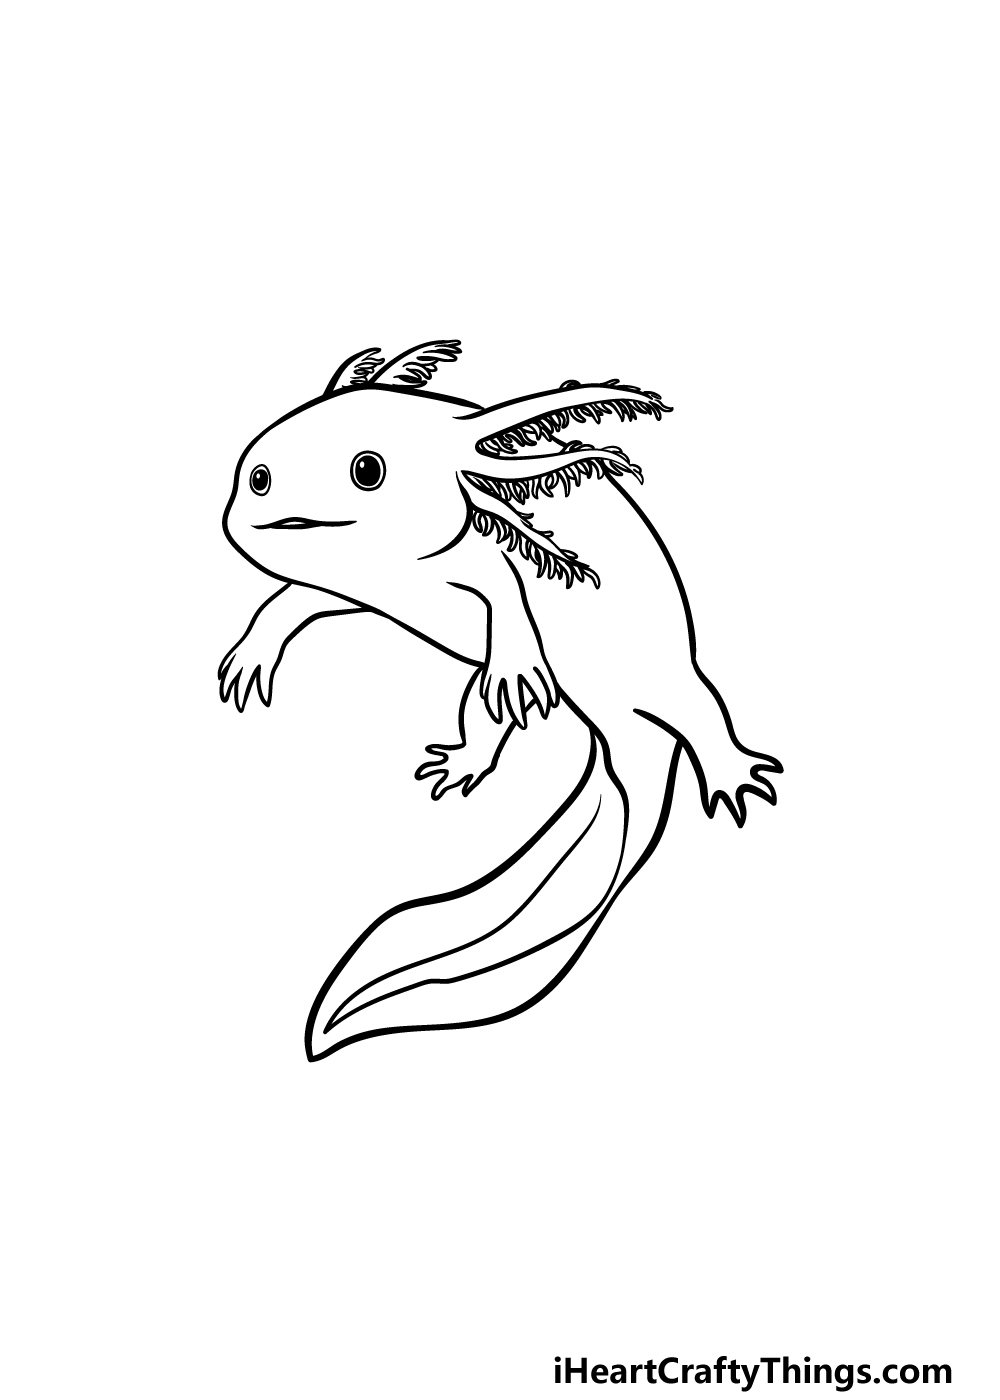 Drawing An Axolotl step 5